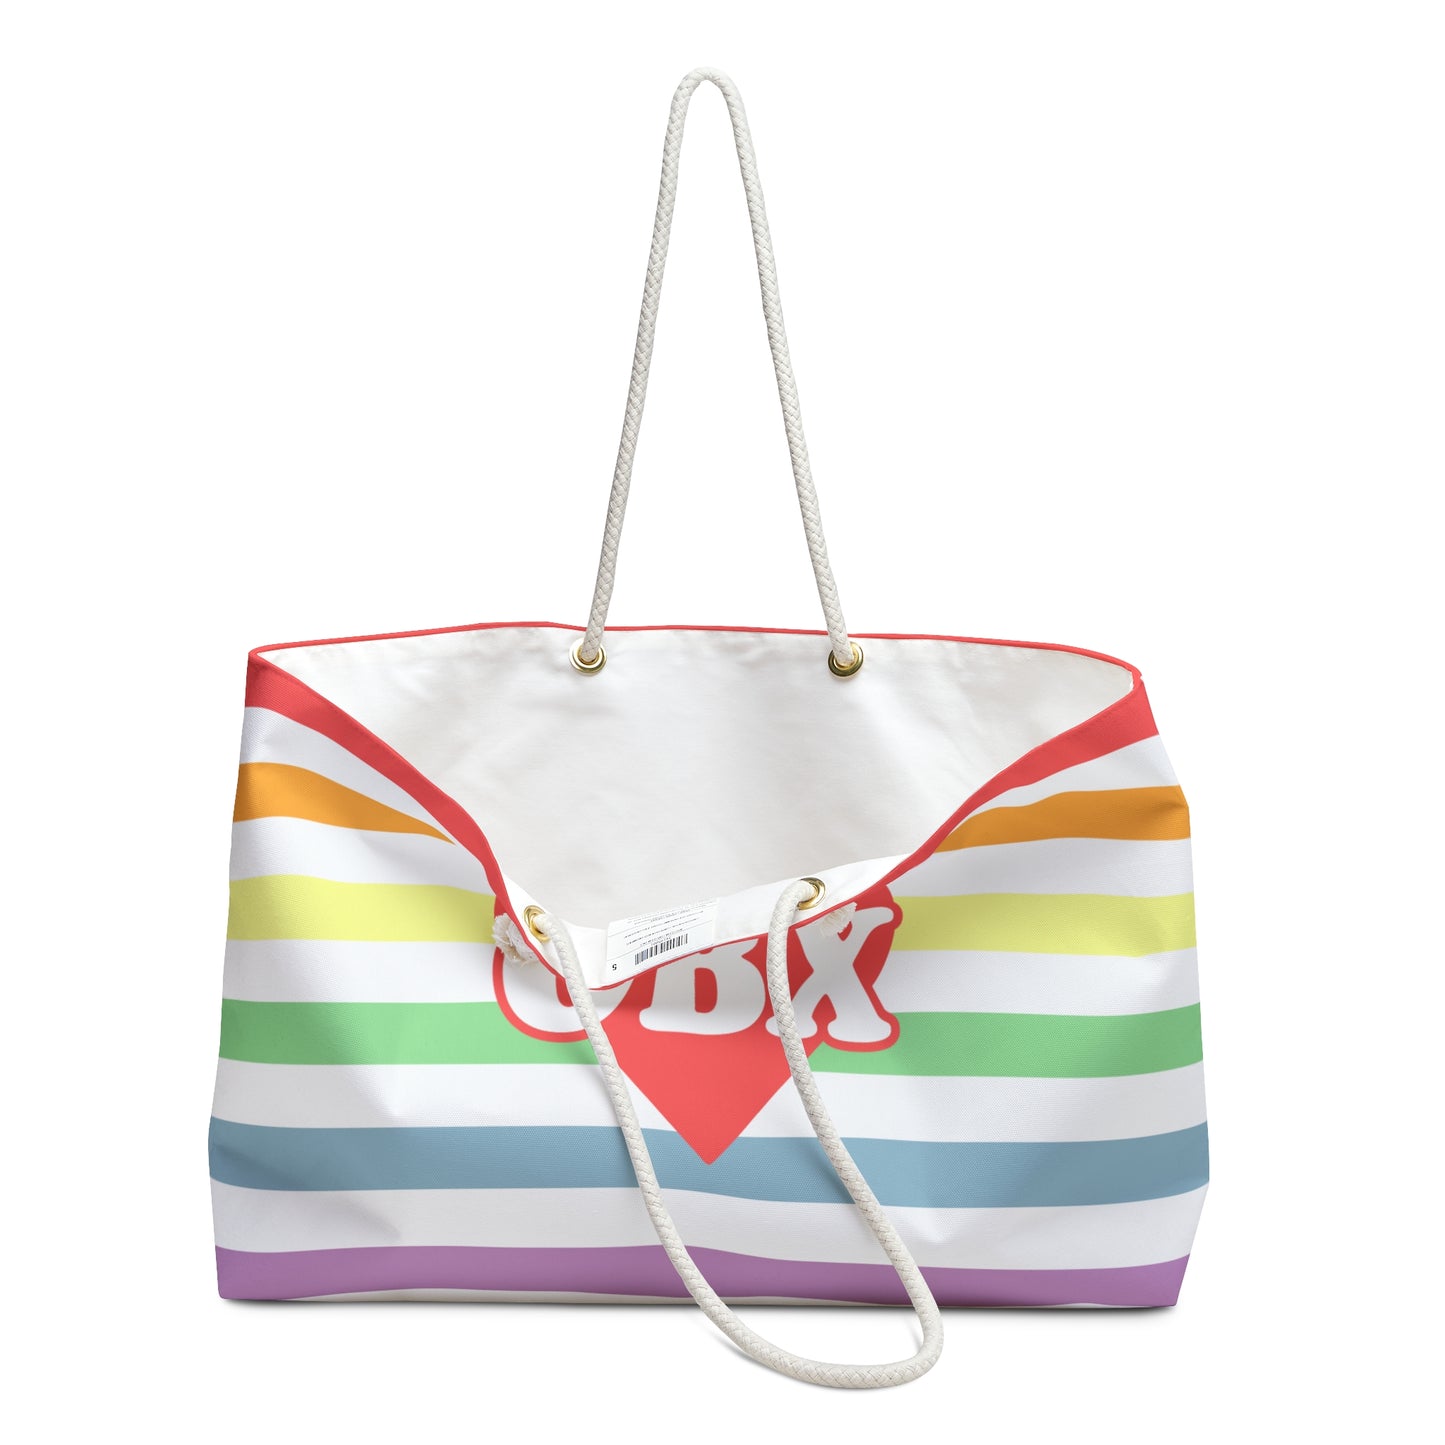 OBX ♡ Rainbow Beach Bag